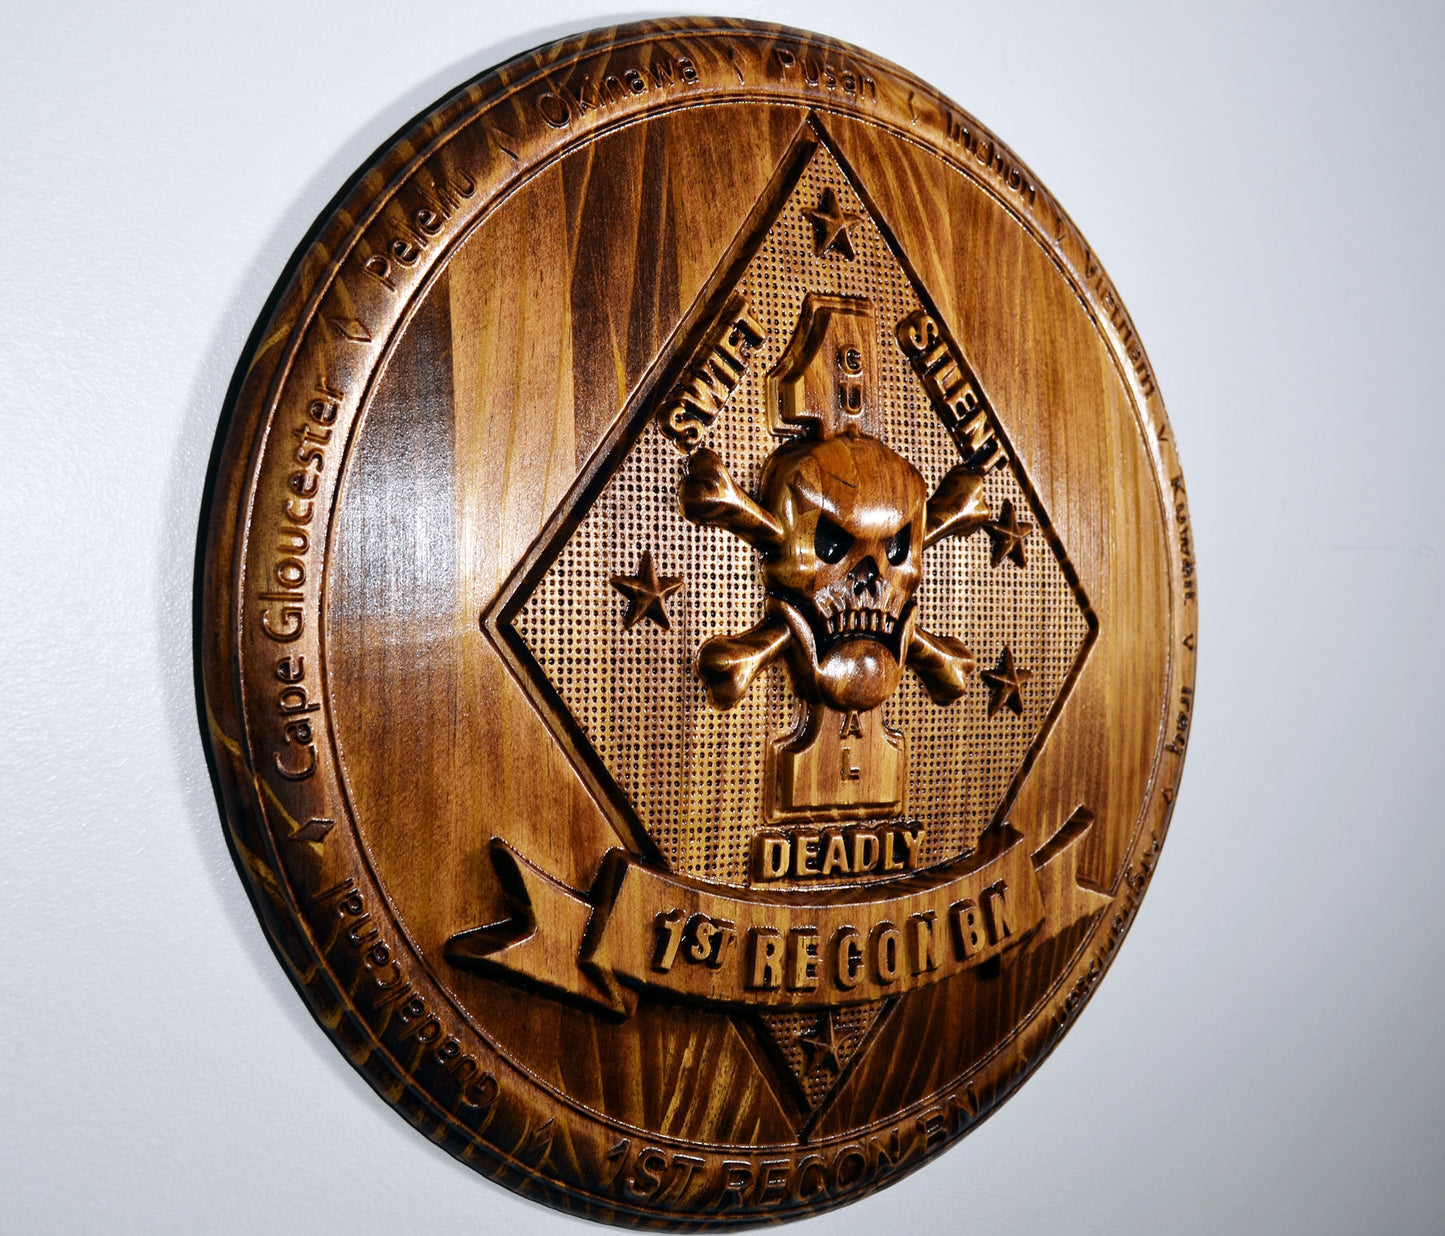 USMC 1st Reconnaissance Battalion, Marine Corps Special Forces, CNC 3d wood carving, military plaque